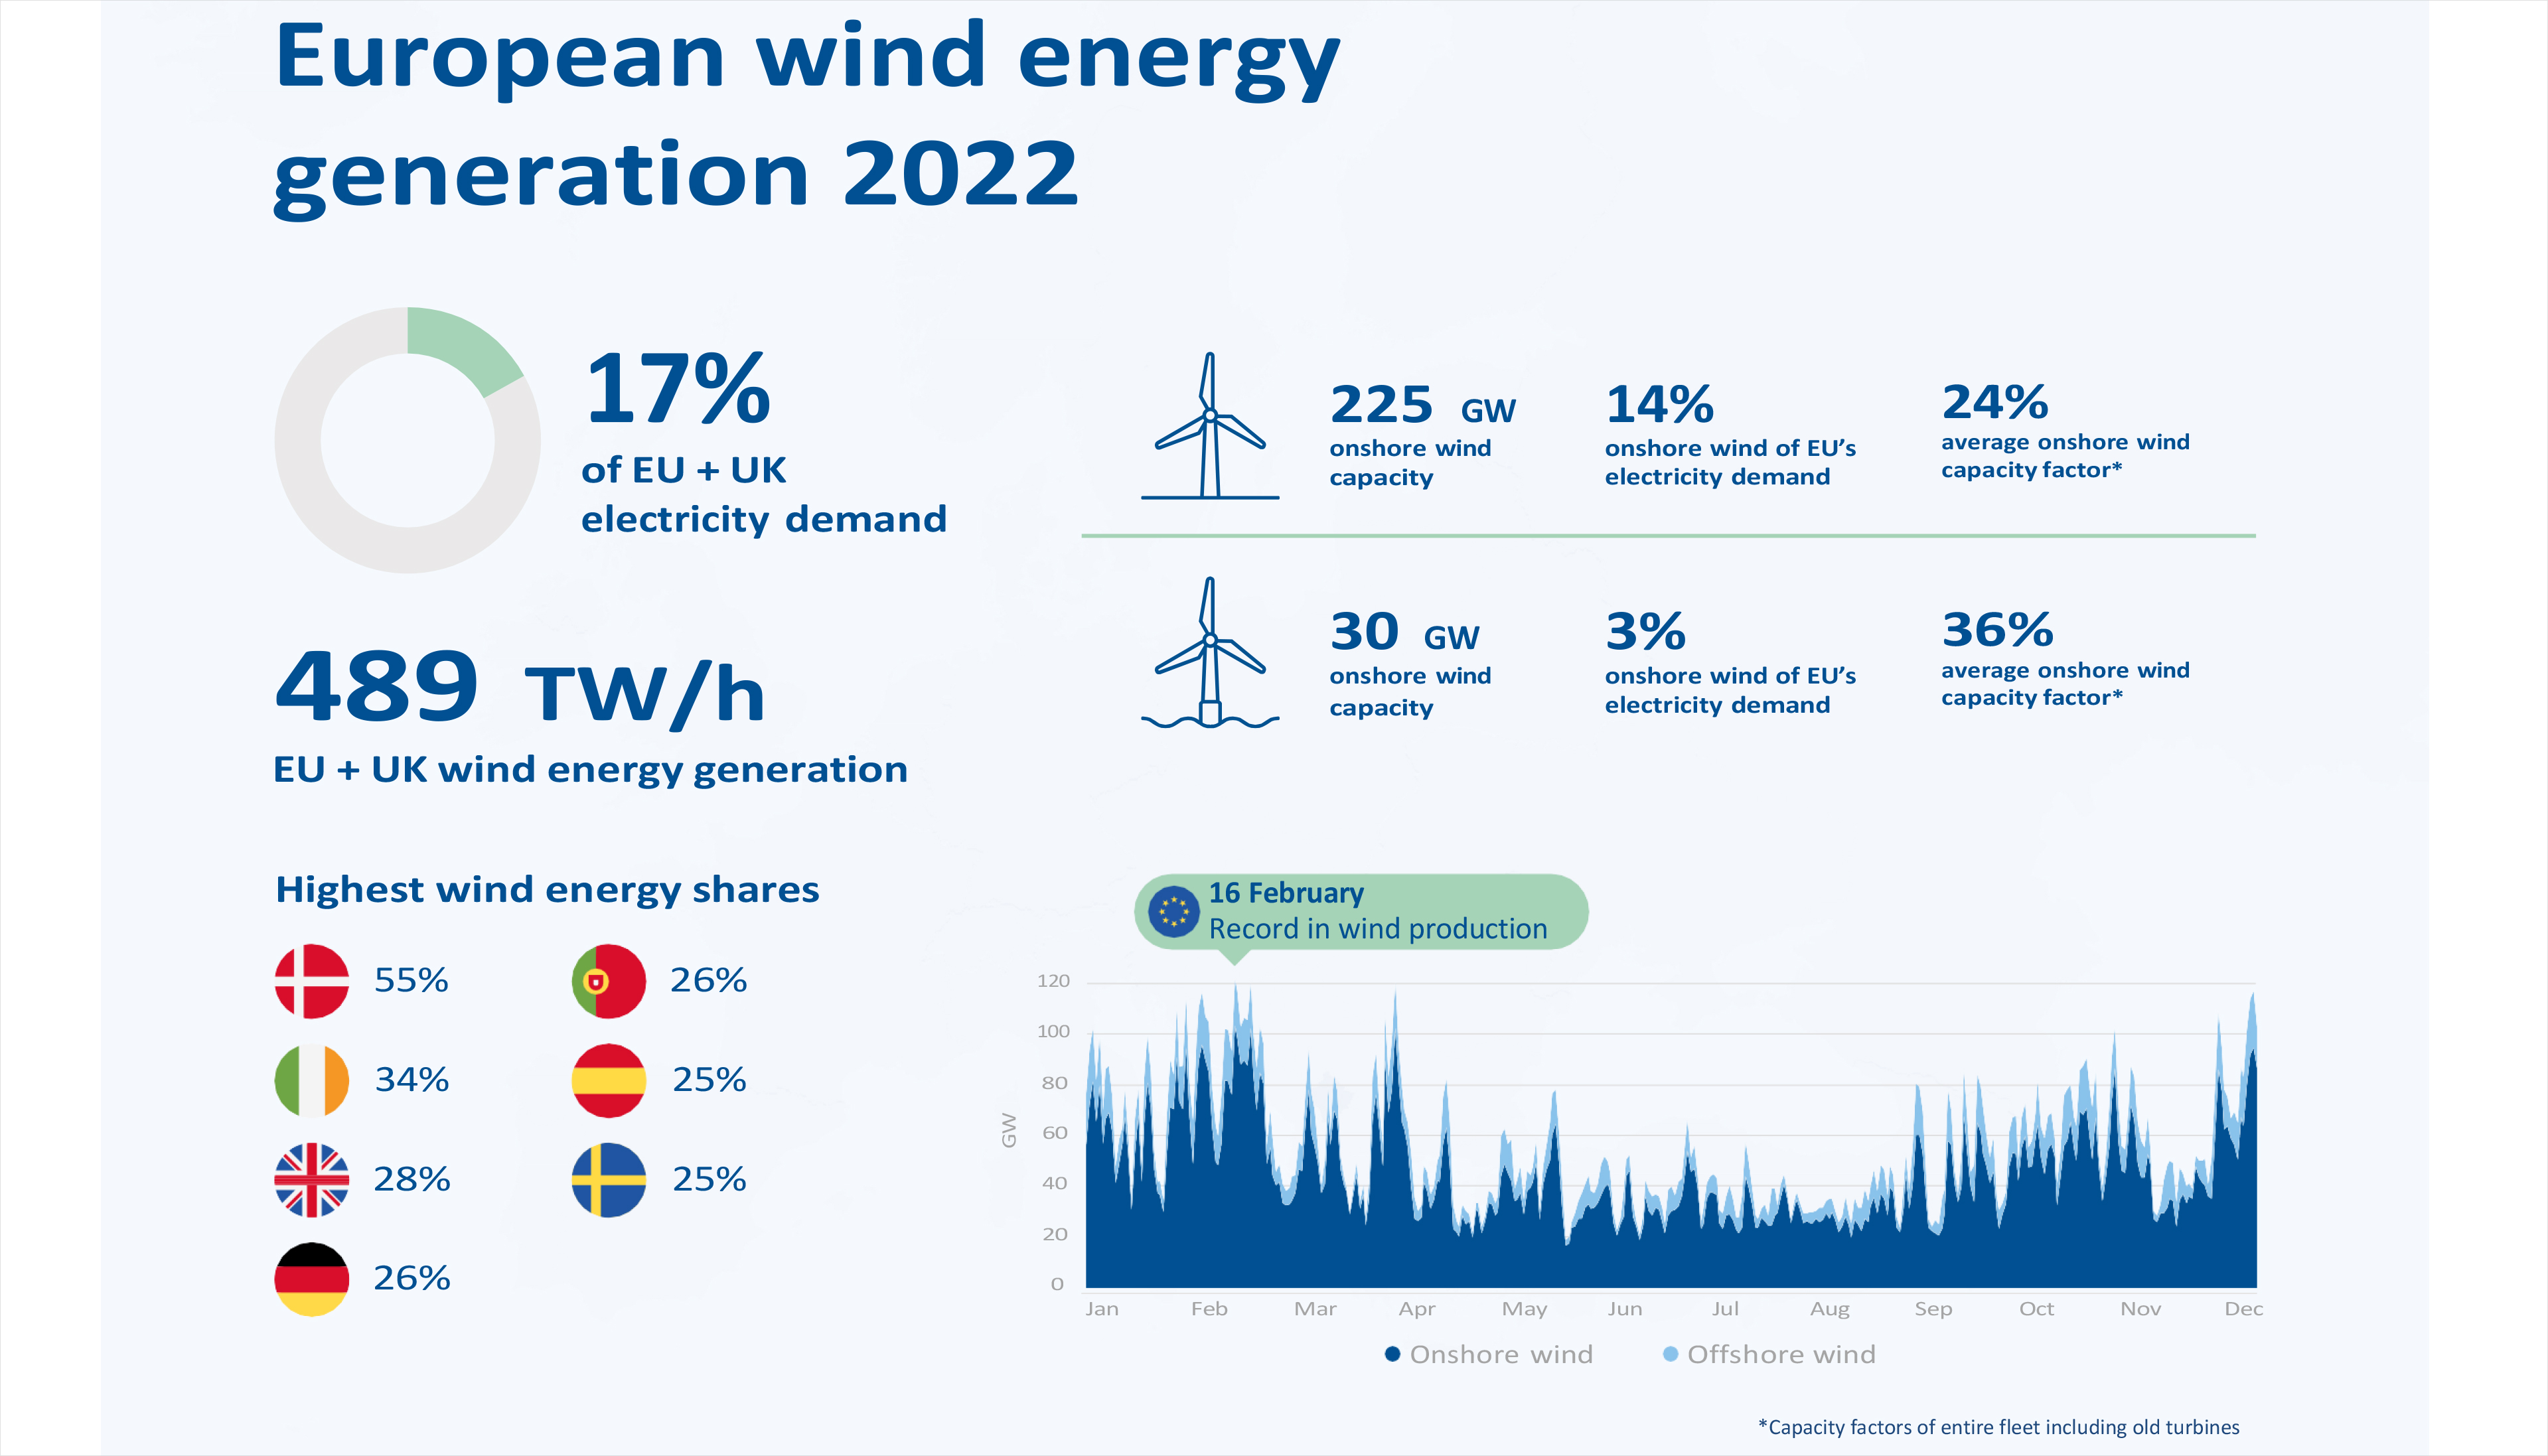 La energa elica representa el 17% de la demanda elctrica en la Unin Europea ms el Reino Unido